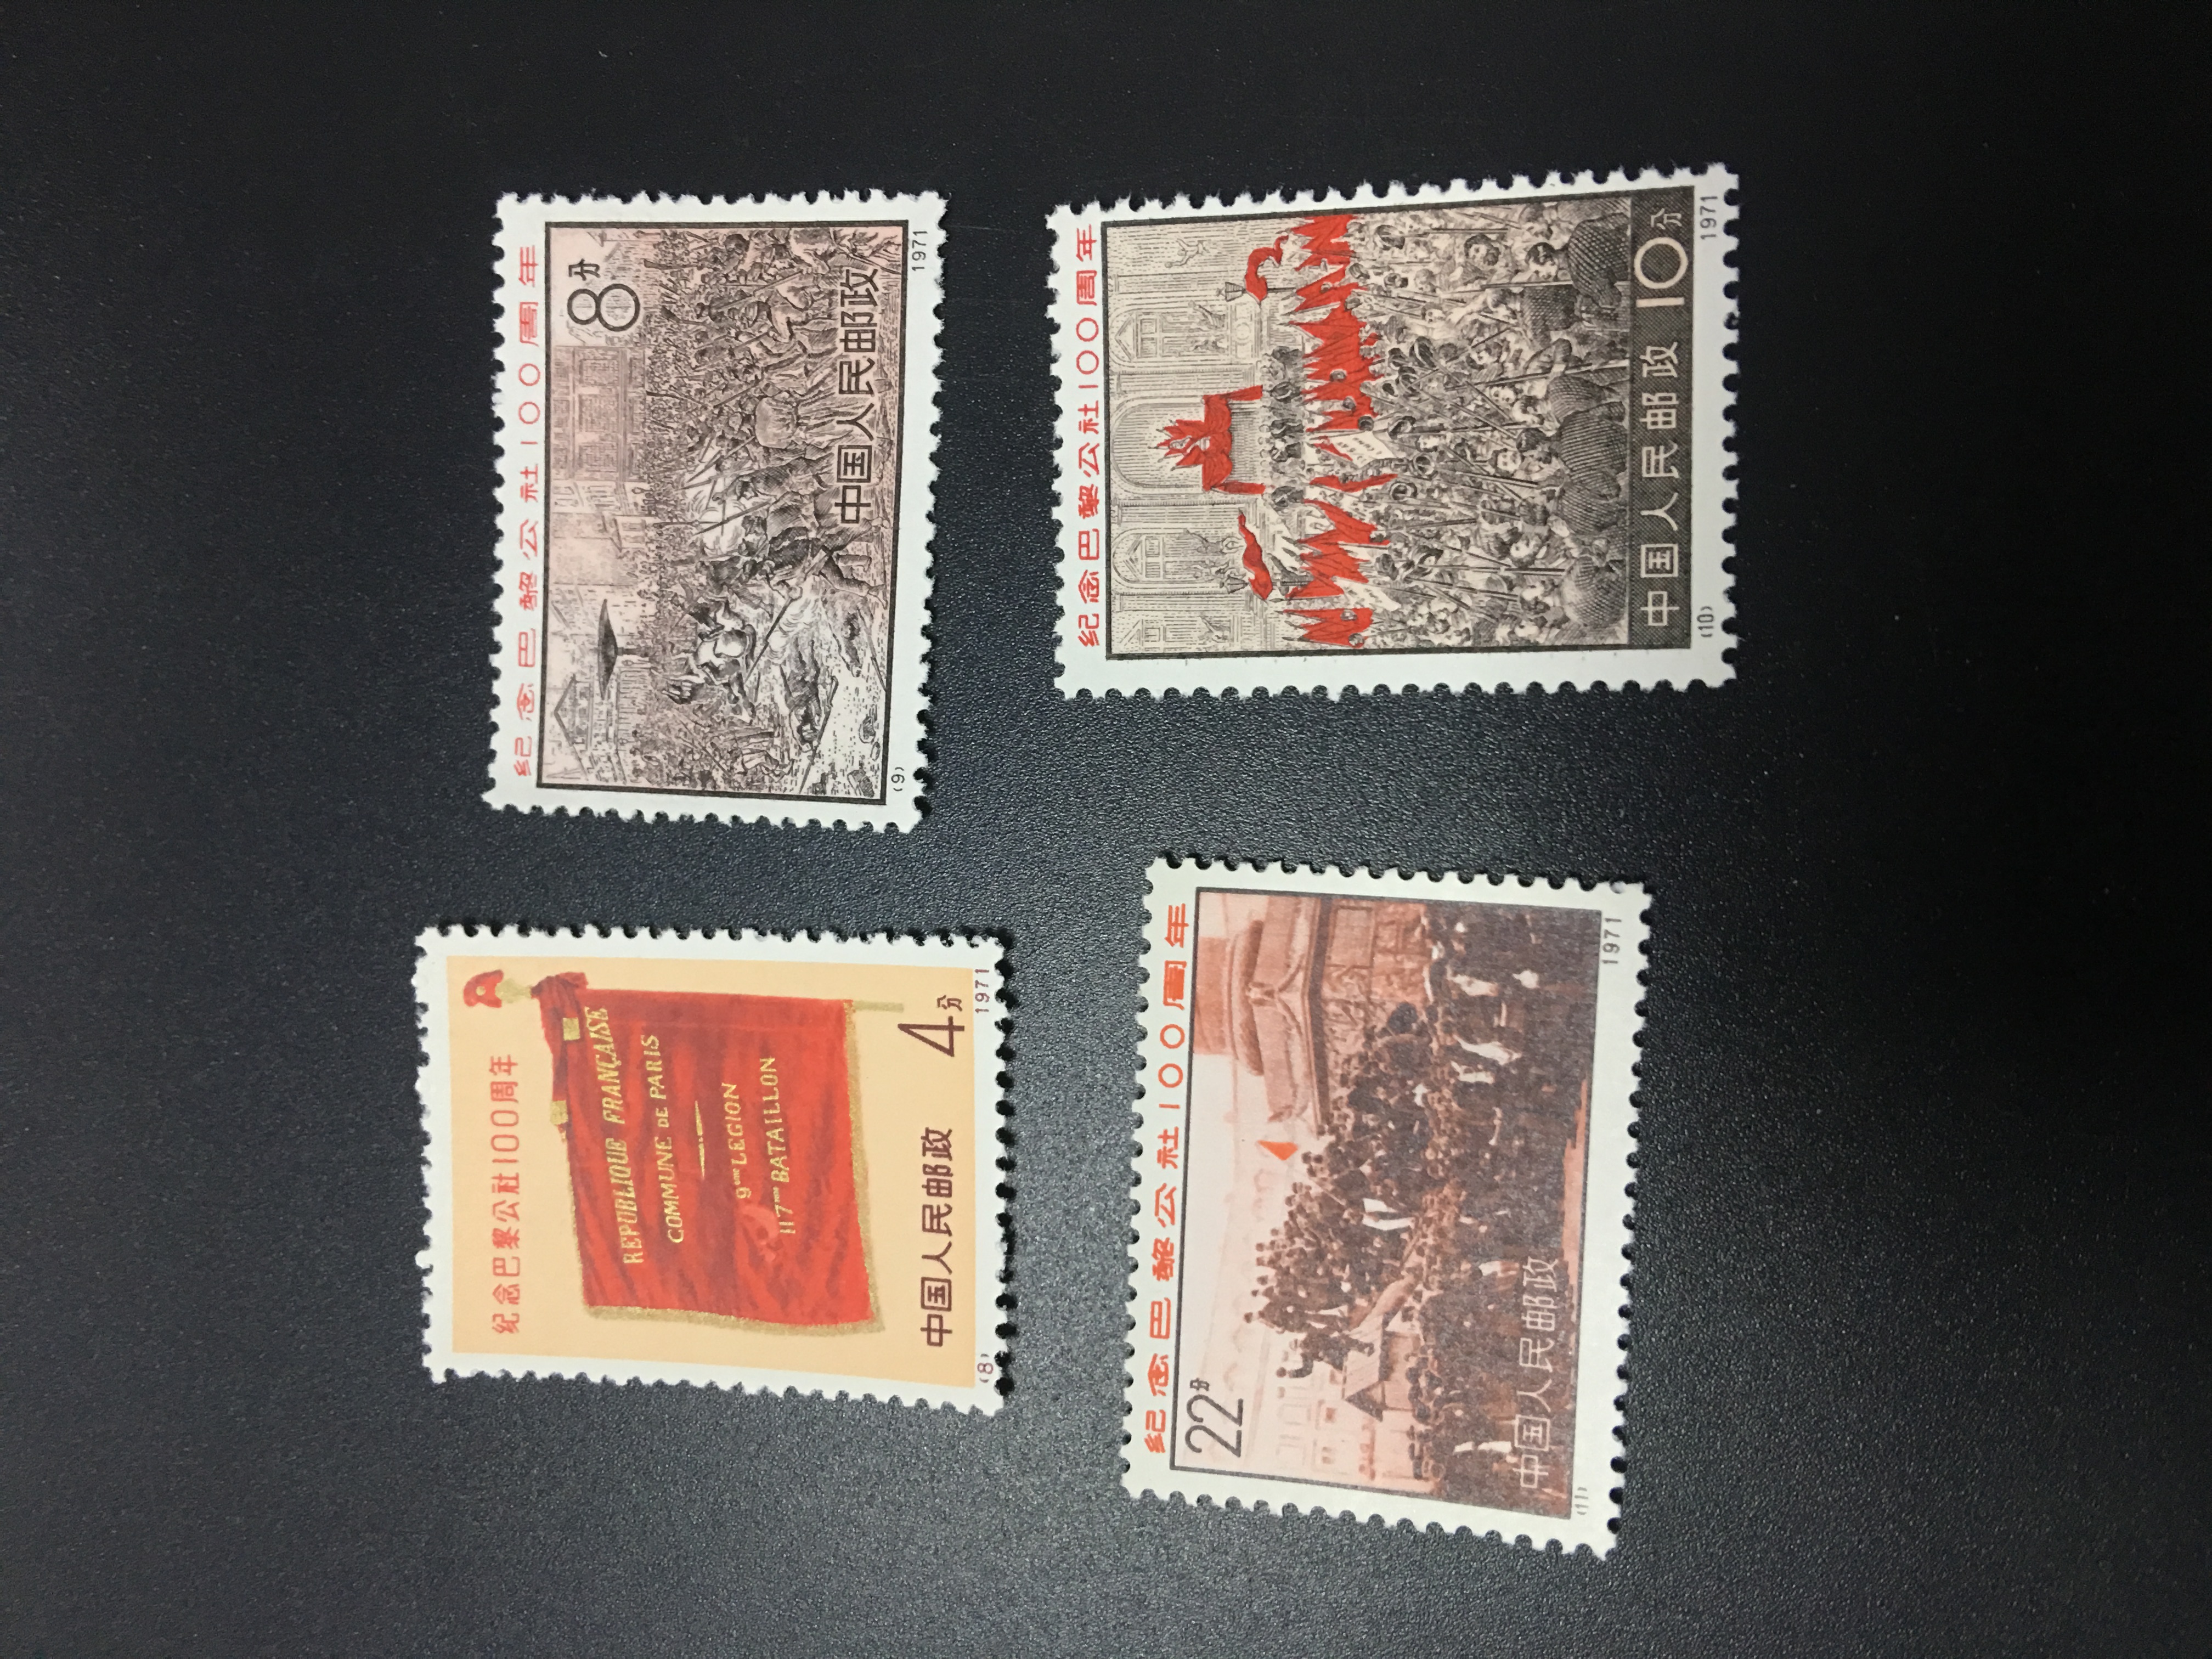 1995年最贵的邮票图片